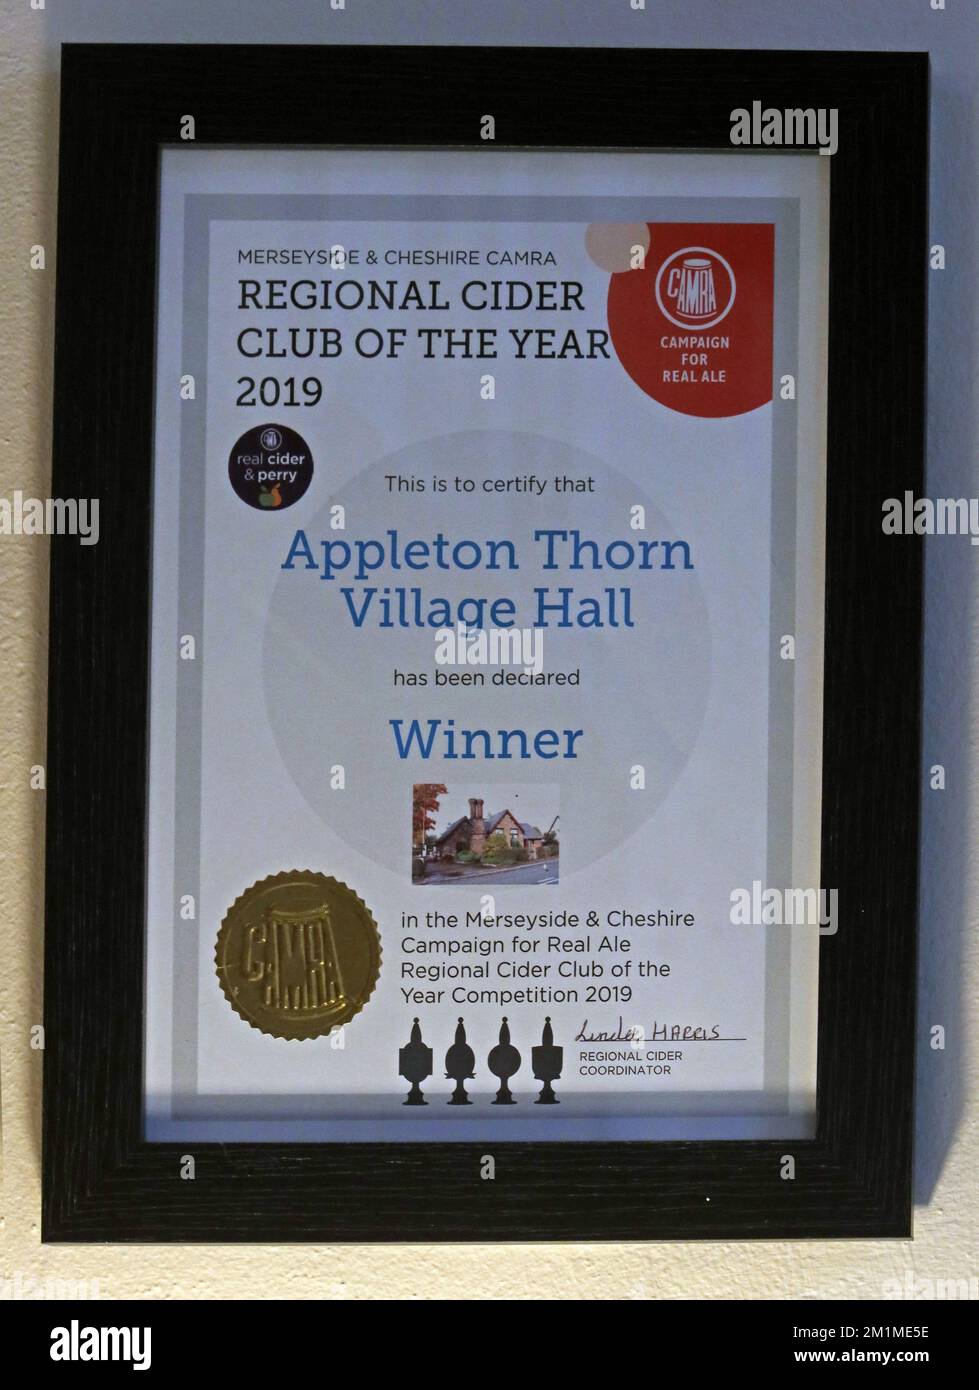 Merseyside & Cheshire CAMRA, Regional Cider Club des Jahres 2019, Appleton Thorn Village Hall, Zertifikat mit Gewinnerrahmen Stockfoto